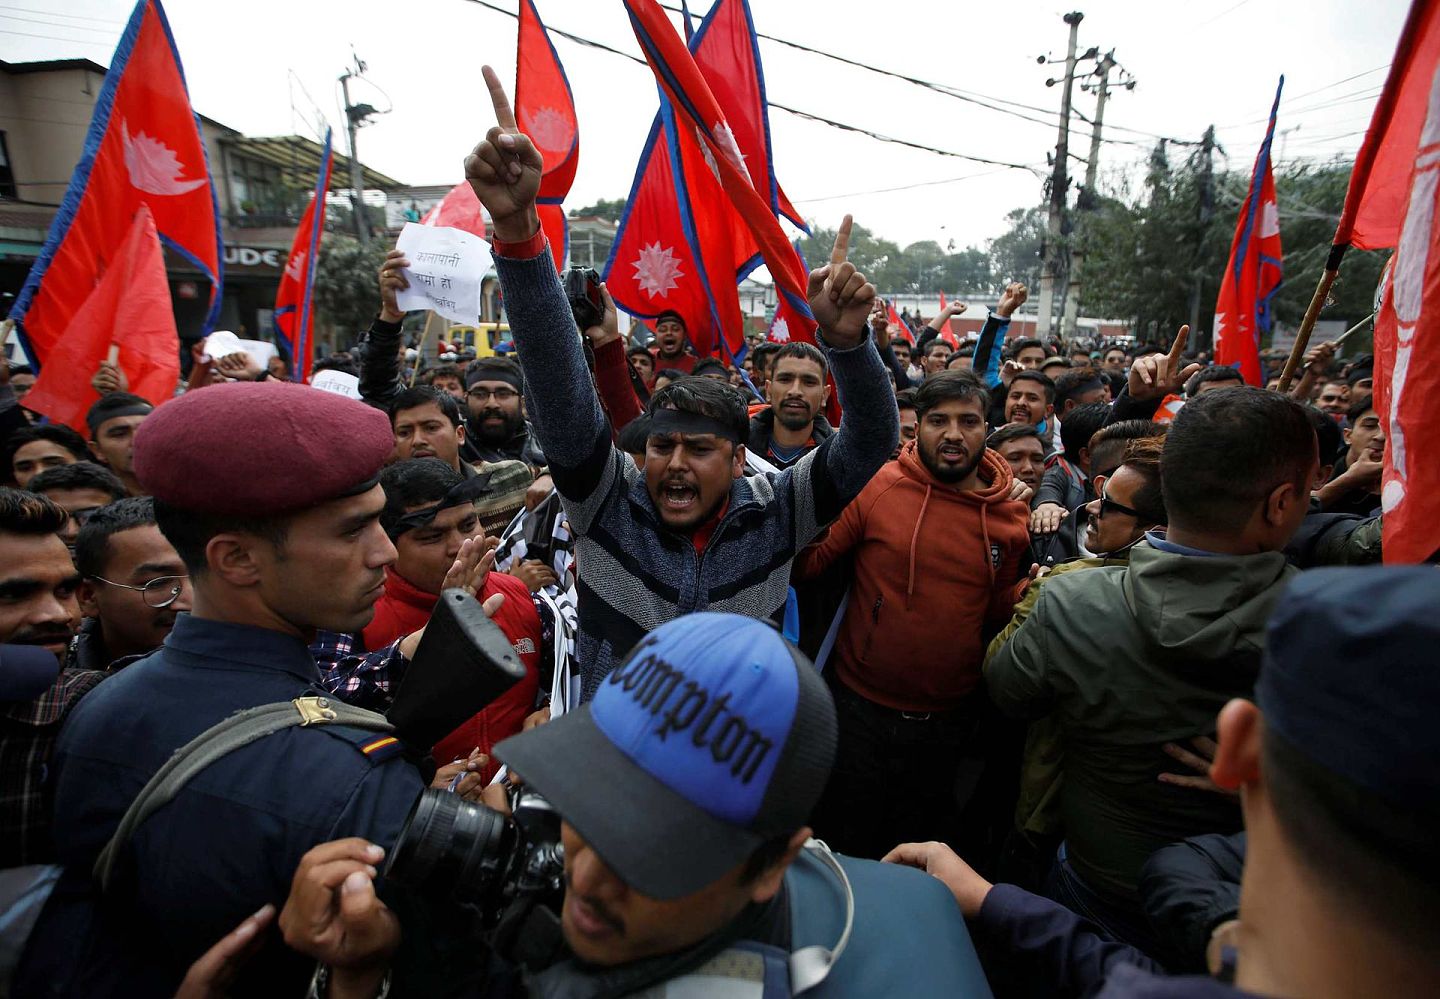 近年来，尼泊尔国内民族主义情绪高涨，青年学生经常高举爱国旗帜抗议印度横暴，新德里方面经常抱怨此举系尼泊尔左翼政府受中国影响所致，事实上，尼泊尔国内的“印度教爱国主义”、“保王党”等势力更热衷于对抗印度。（路透社）